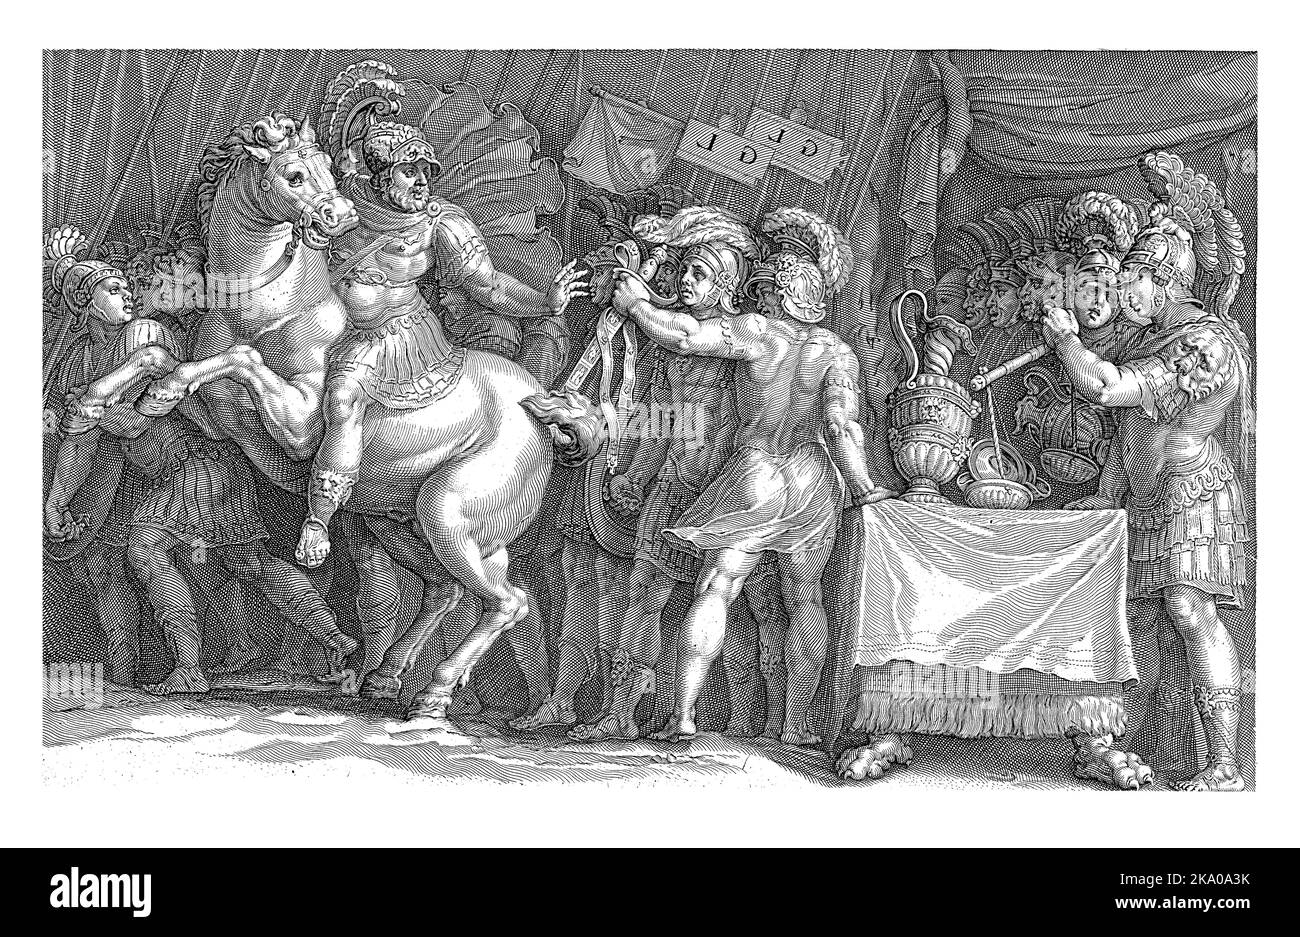 Marcus Furius Camillus arrive à Rome pour négocier avec les Gaulois. Il est assis sur un cheval et atteint une épée qui lui est remise par un soldat. Banque D'Images